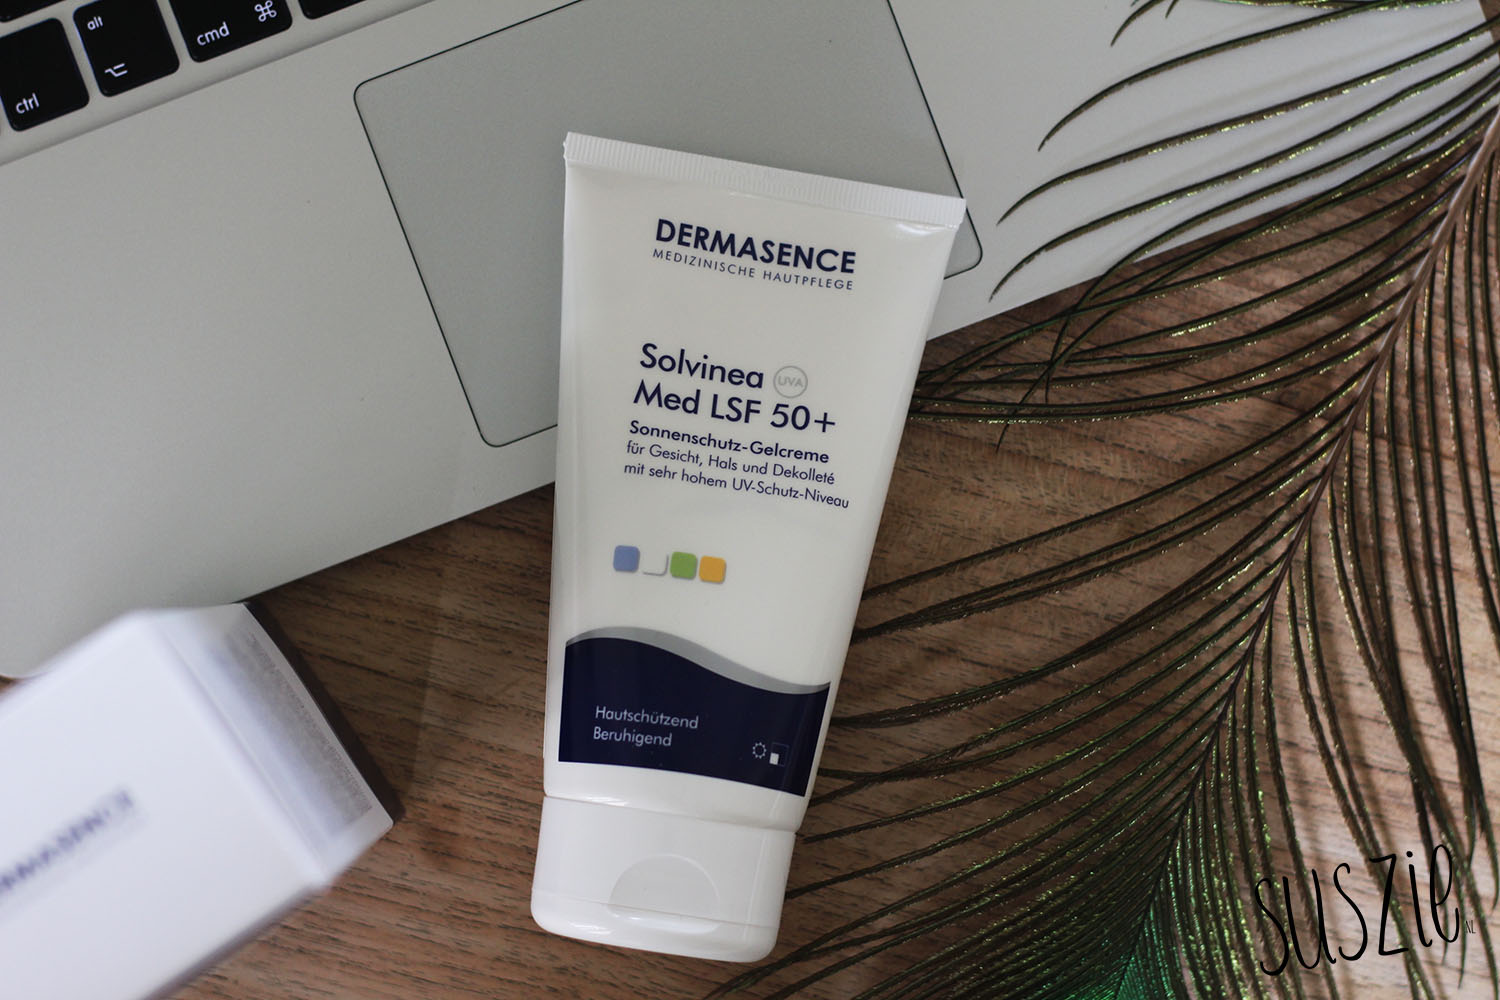 Dermasence Solvinea Med LSF 50+ sun protection cream